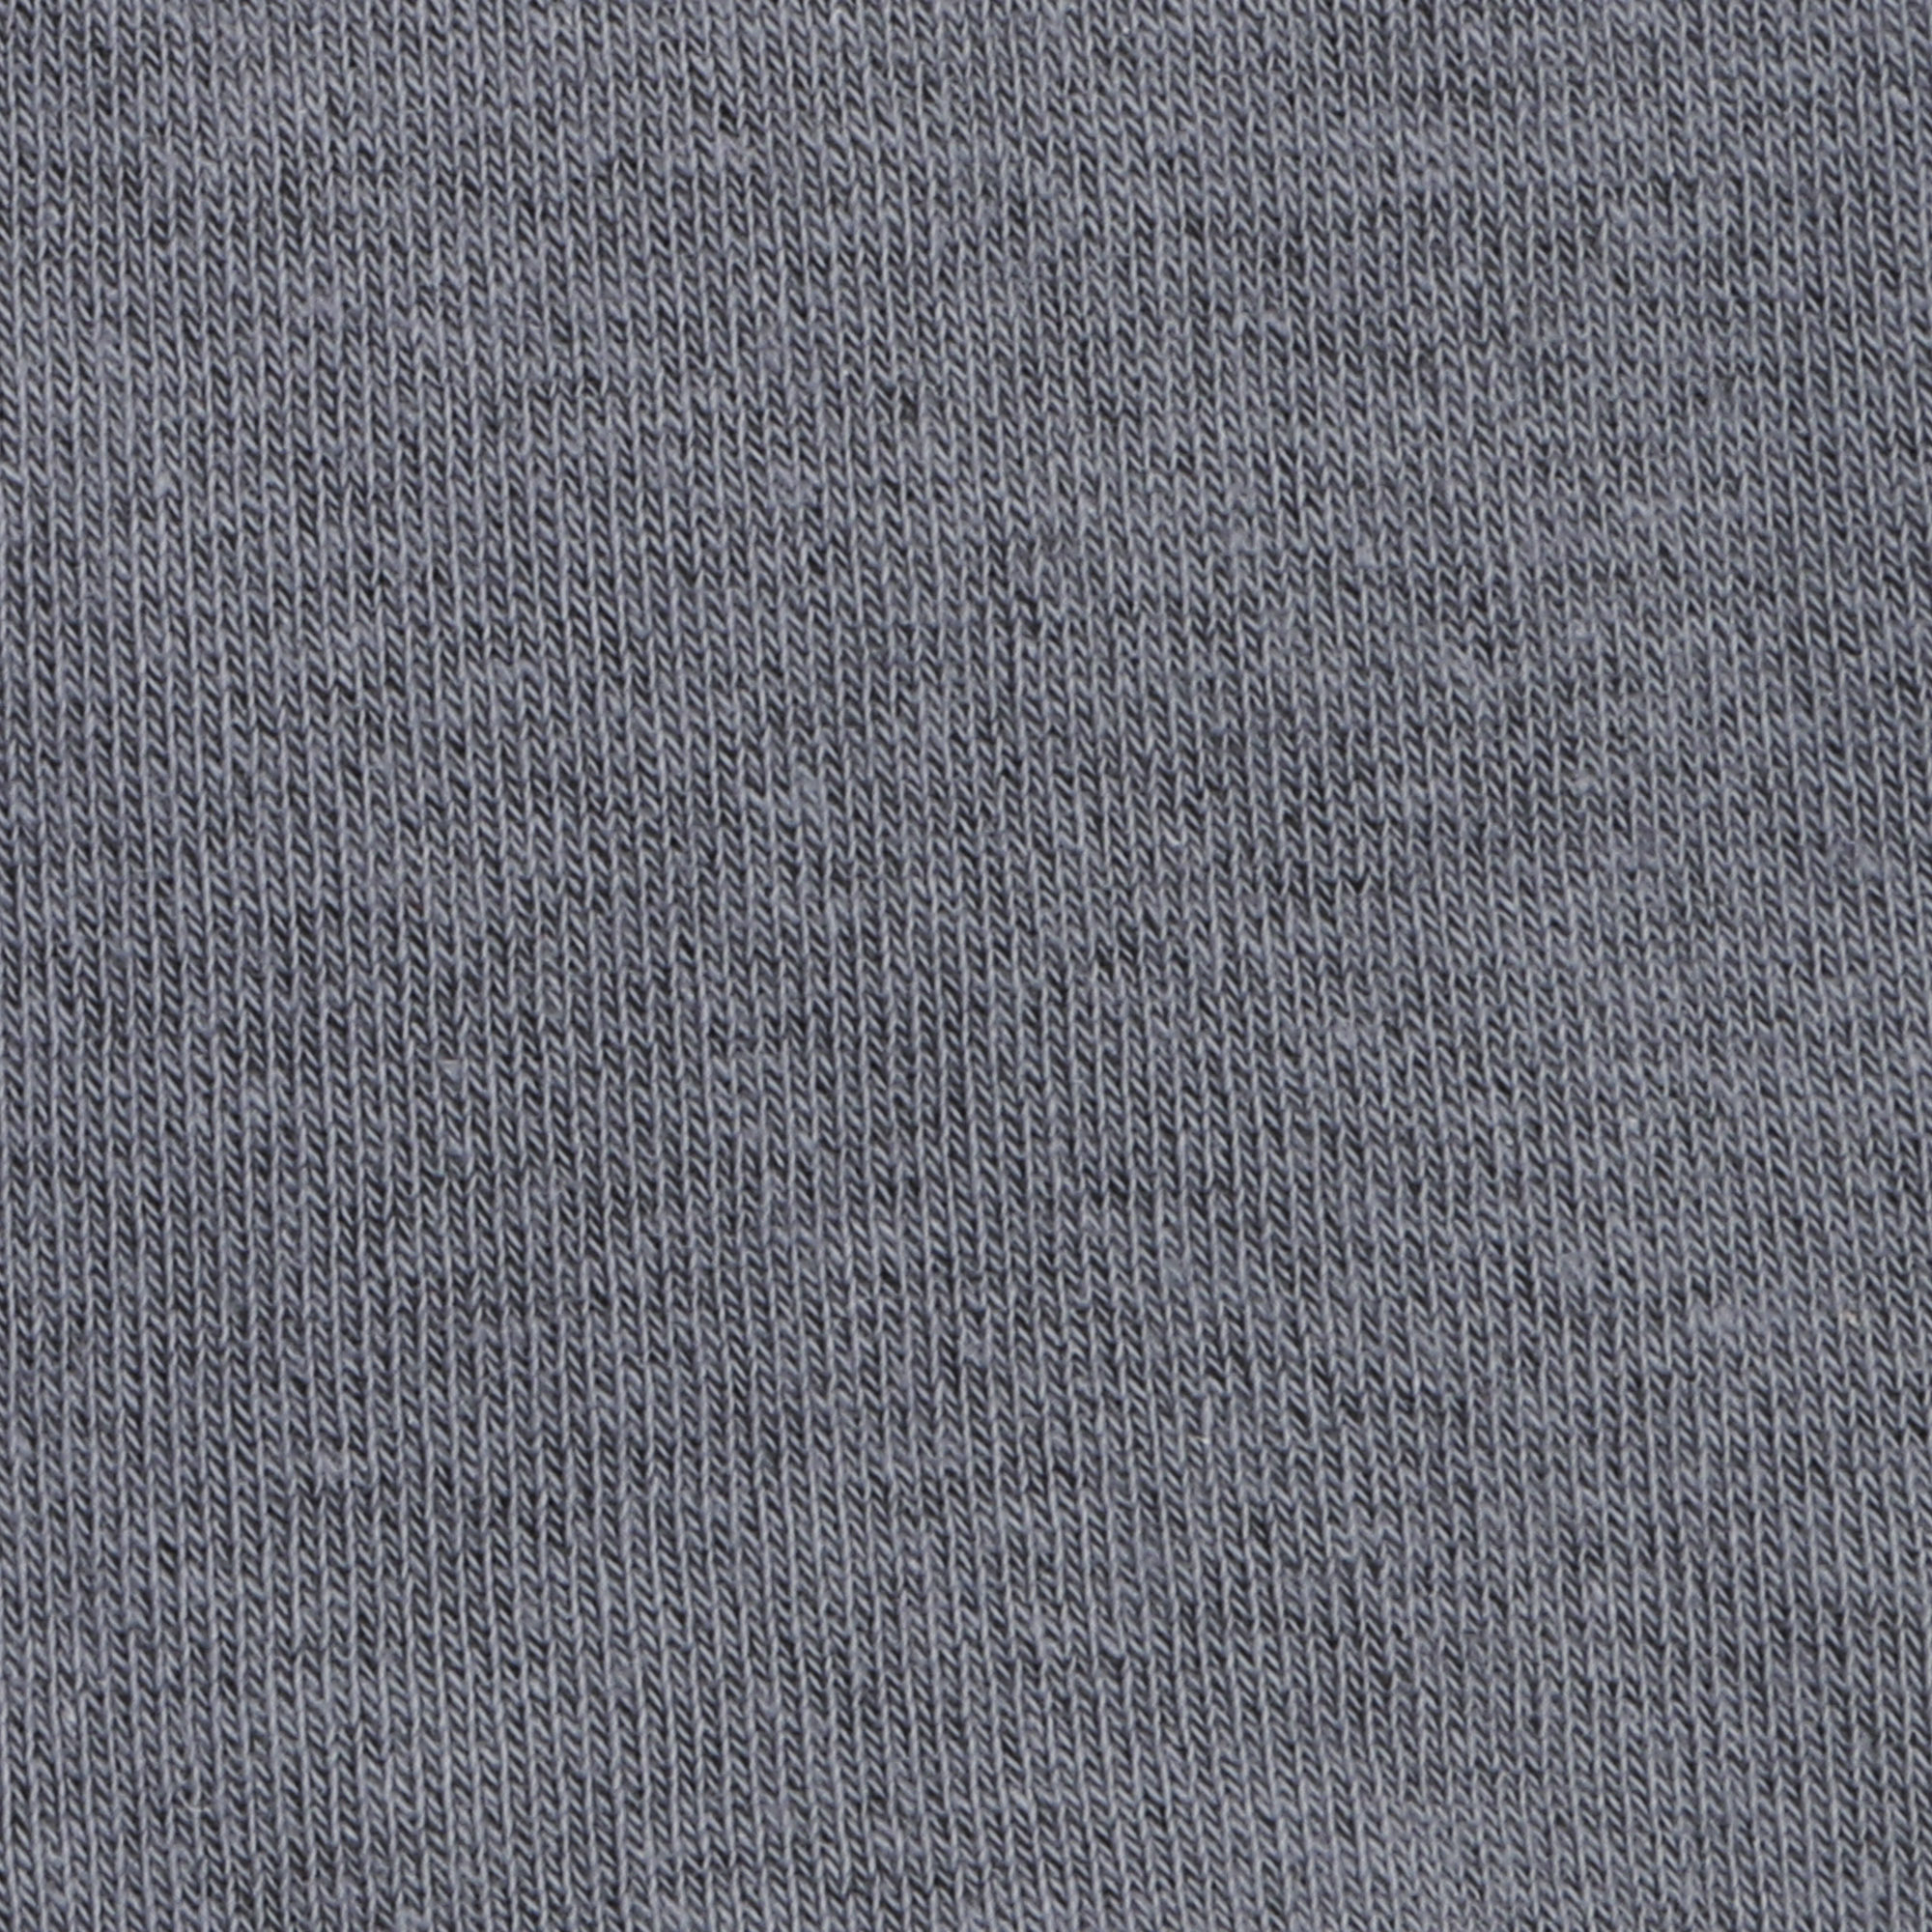 Носки мужские однотонные Lucky Socks НМГ-0053 серые  27-29, цвет серый, размер 27-29 - фото 2